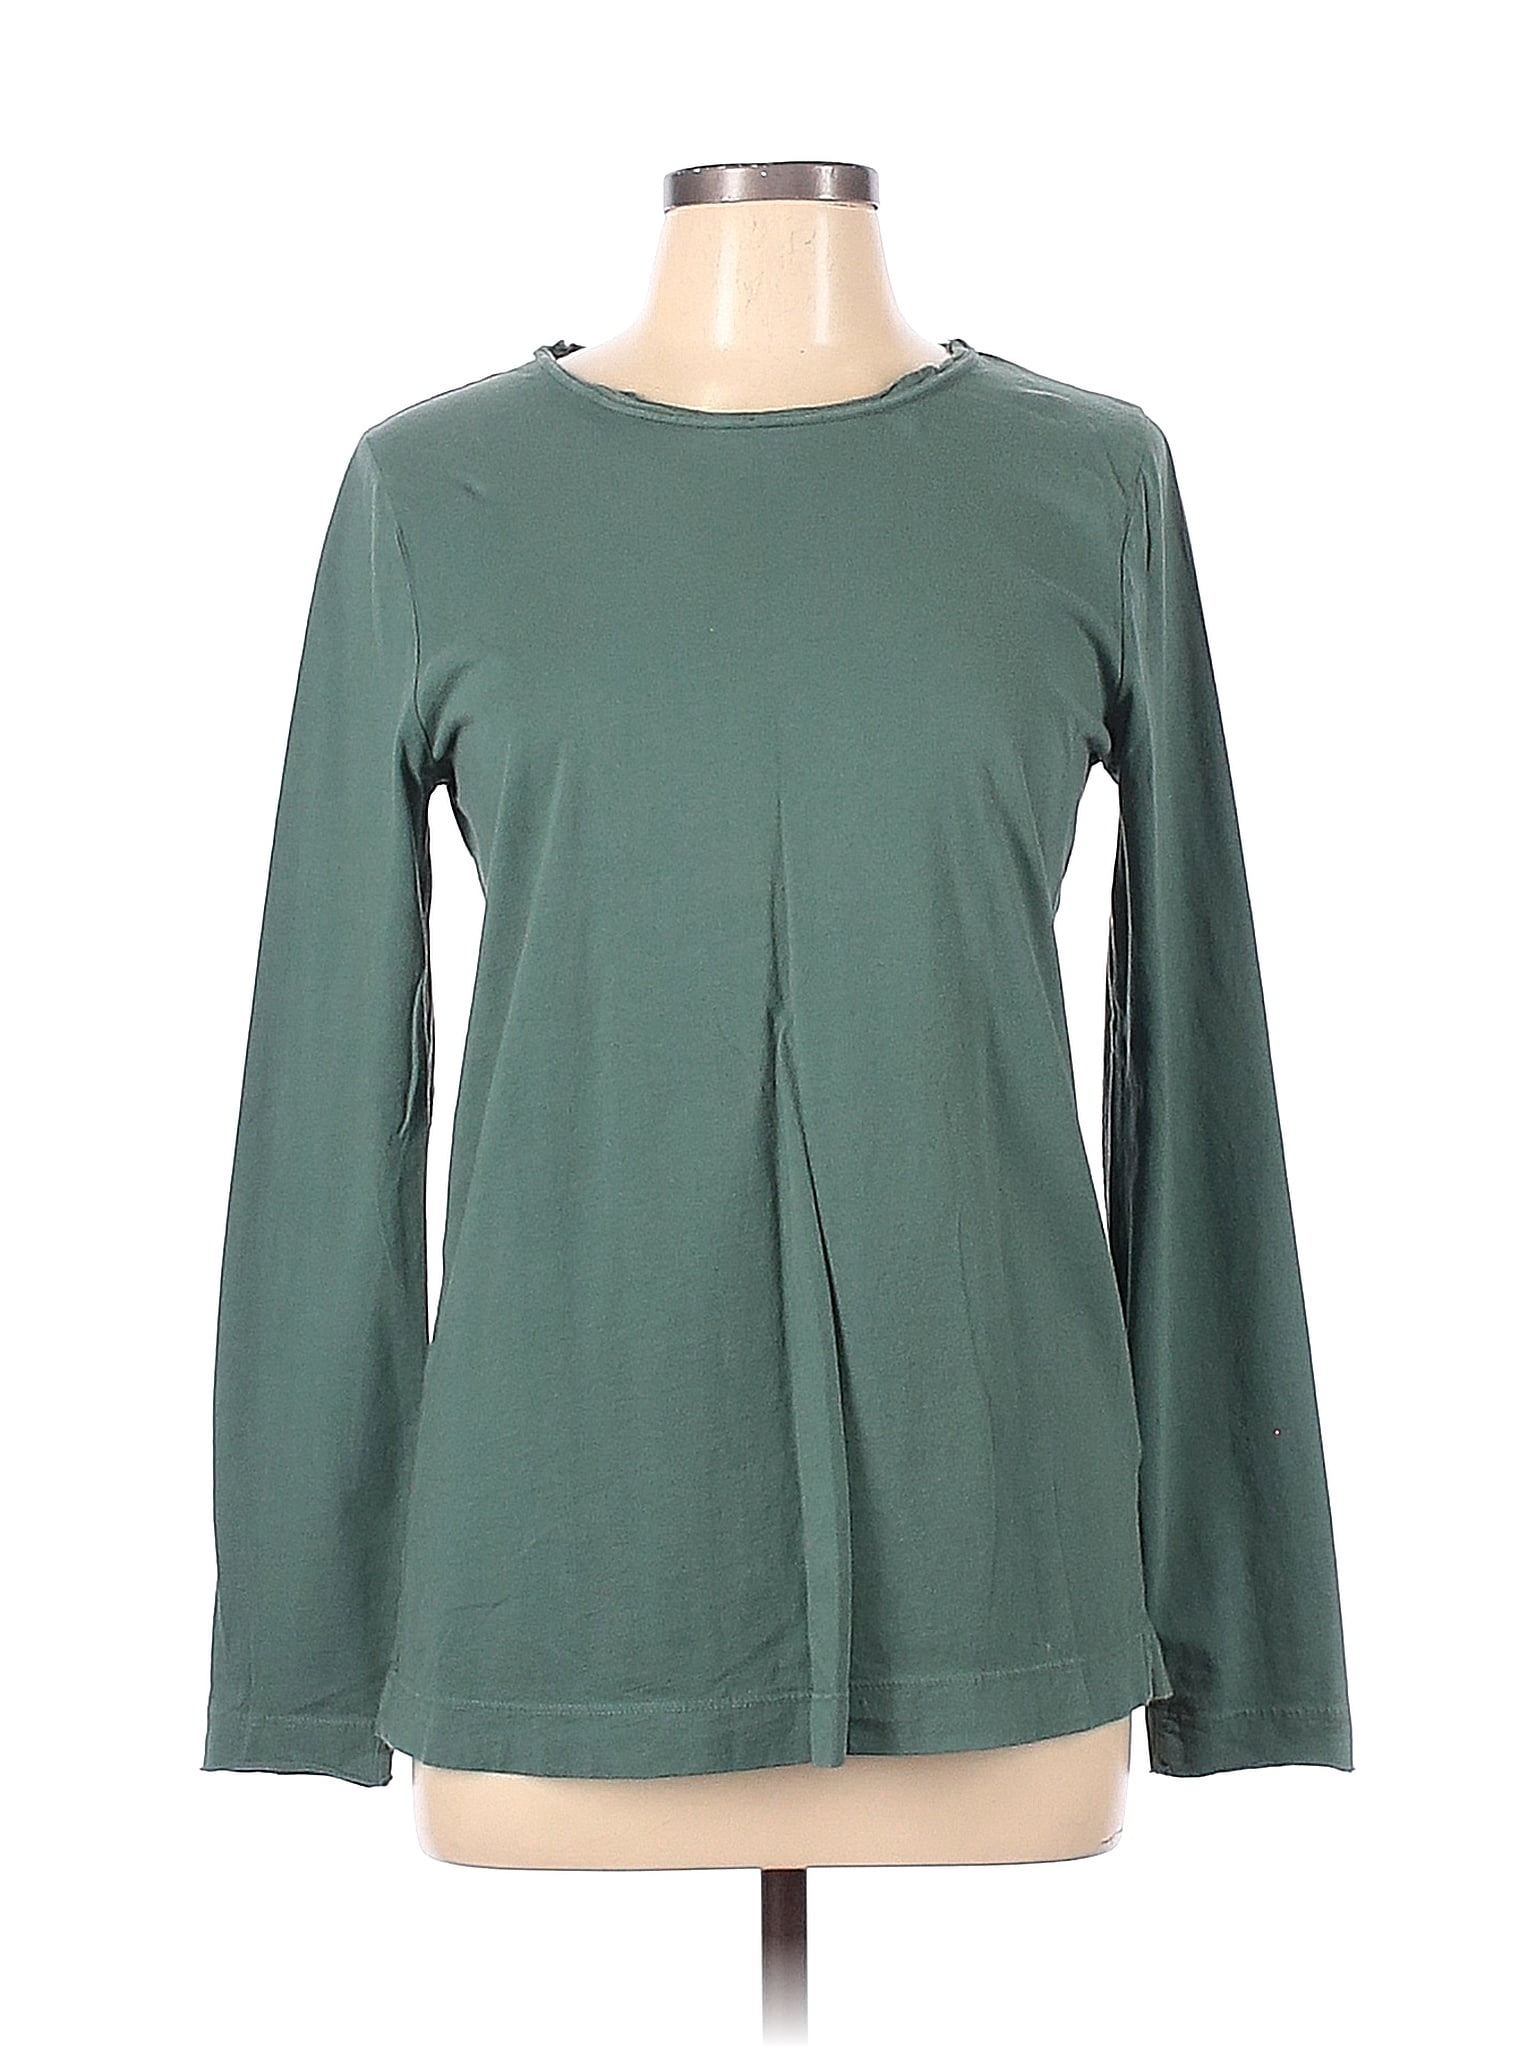 Three Dots Solid Green Sweatshirt Size L - 74% off | thredUP